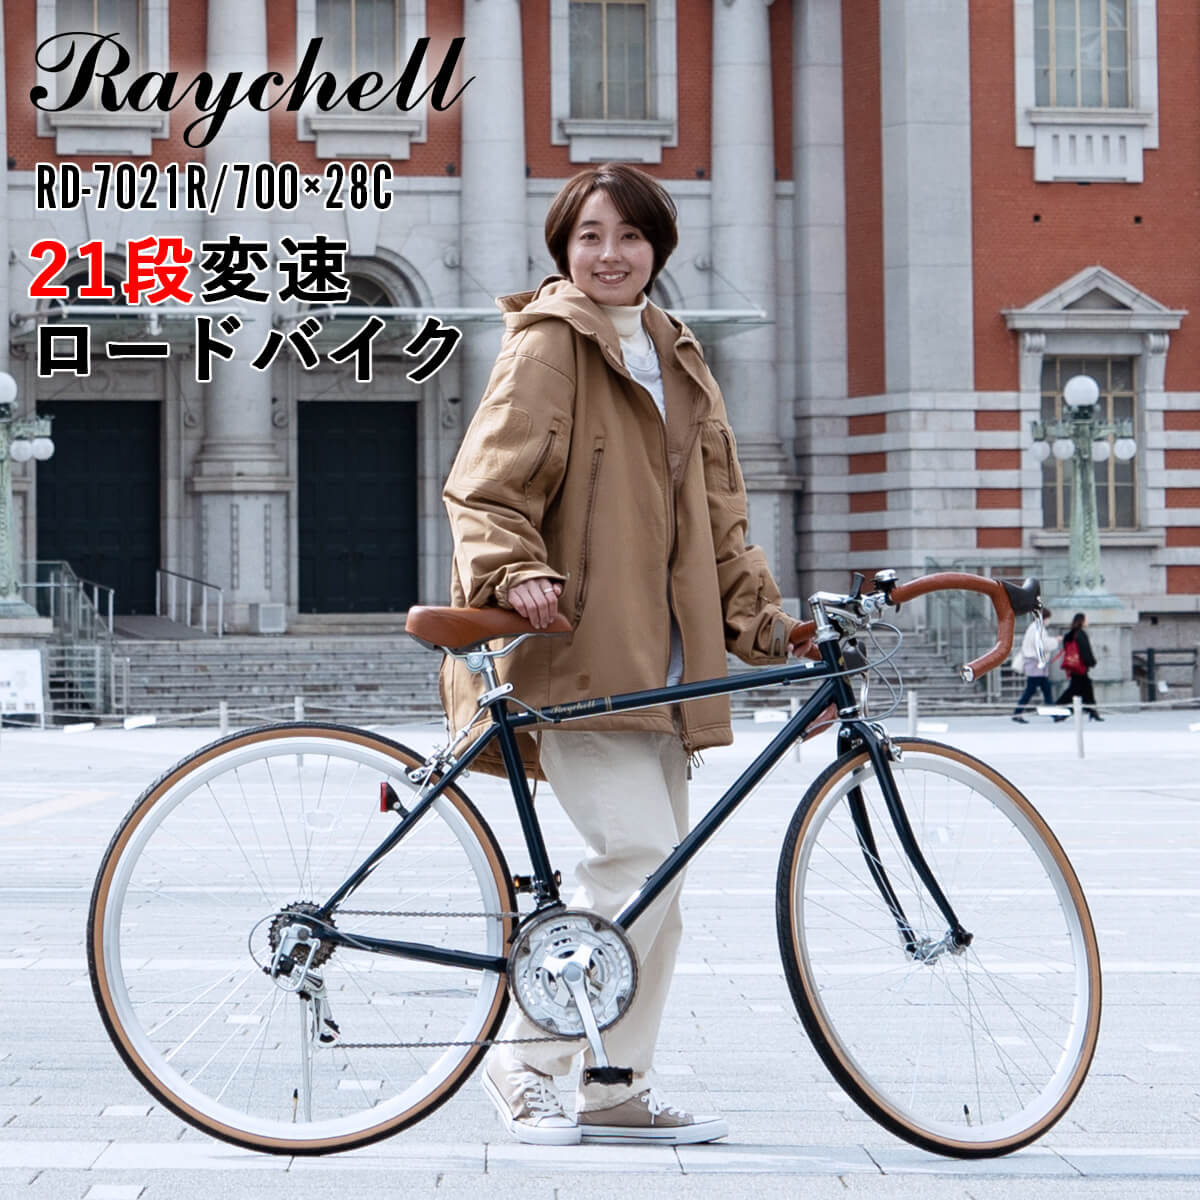 ロードバイク 完成品出荷 / 置き配可能 自転車 700×28C シマノ21段変速 軽量 組立済 初心者 街乗りスポーツバイク レイチェル  Raychell RD-7021R